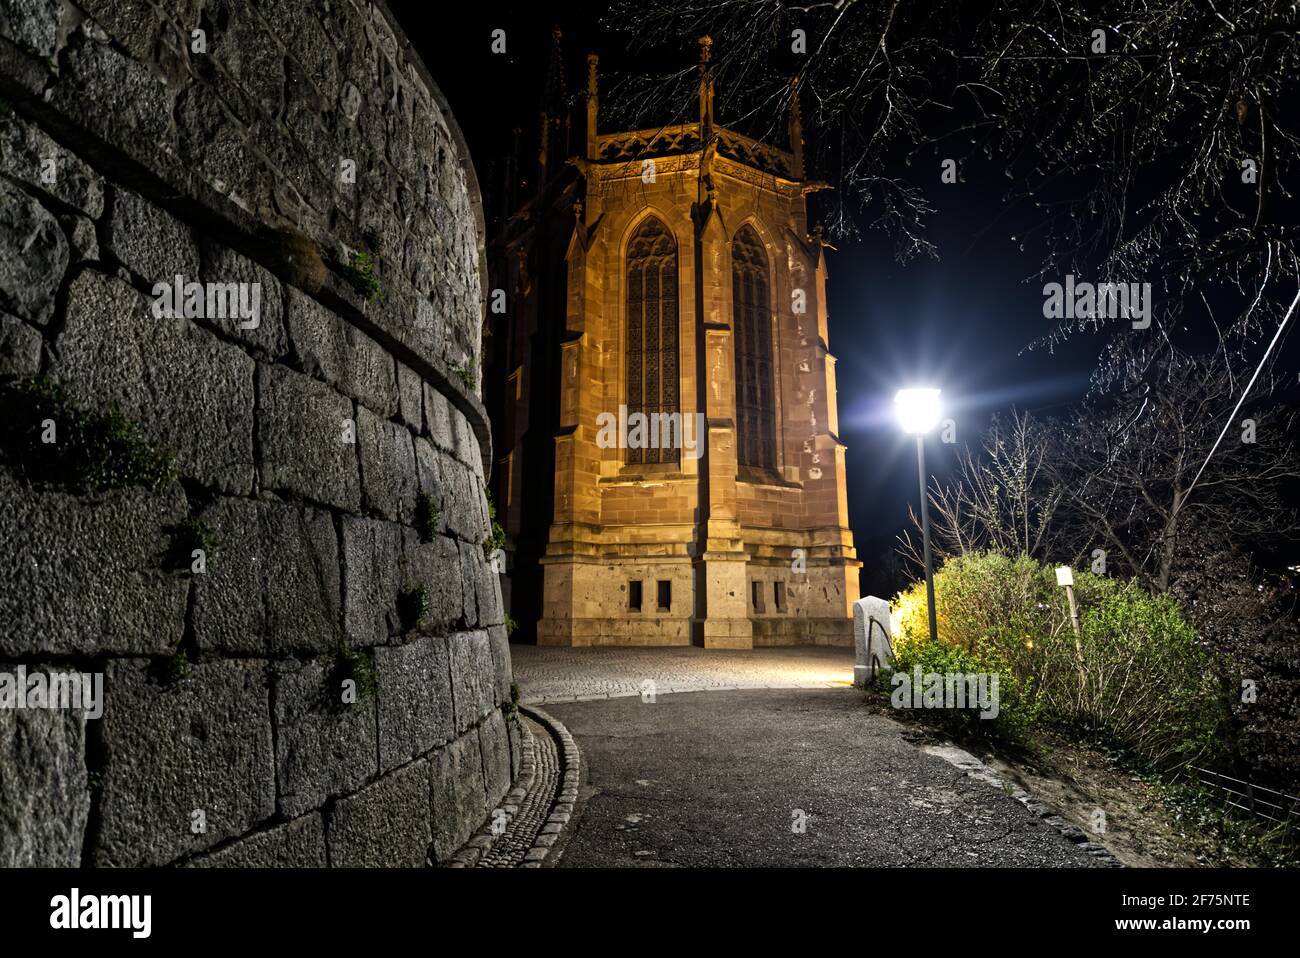 Ein schönes dramatisches Bild einer katholischen Kirche in der Nacht. Selektive Fokusmethode. Stockfoto